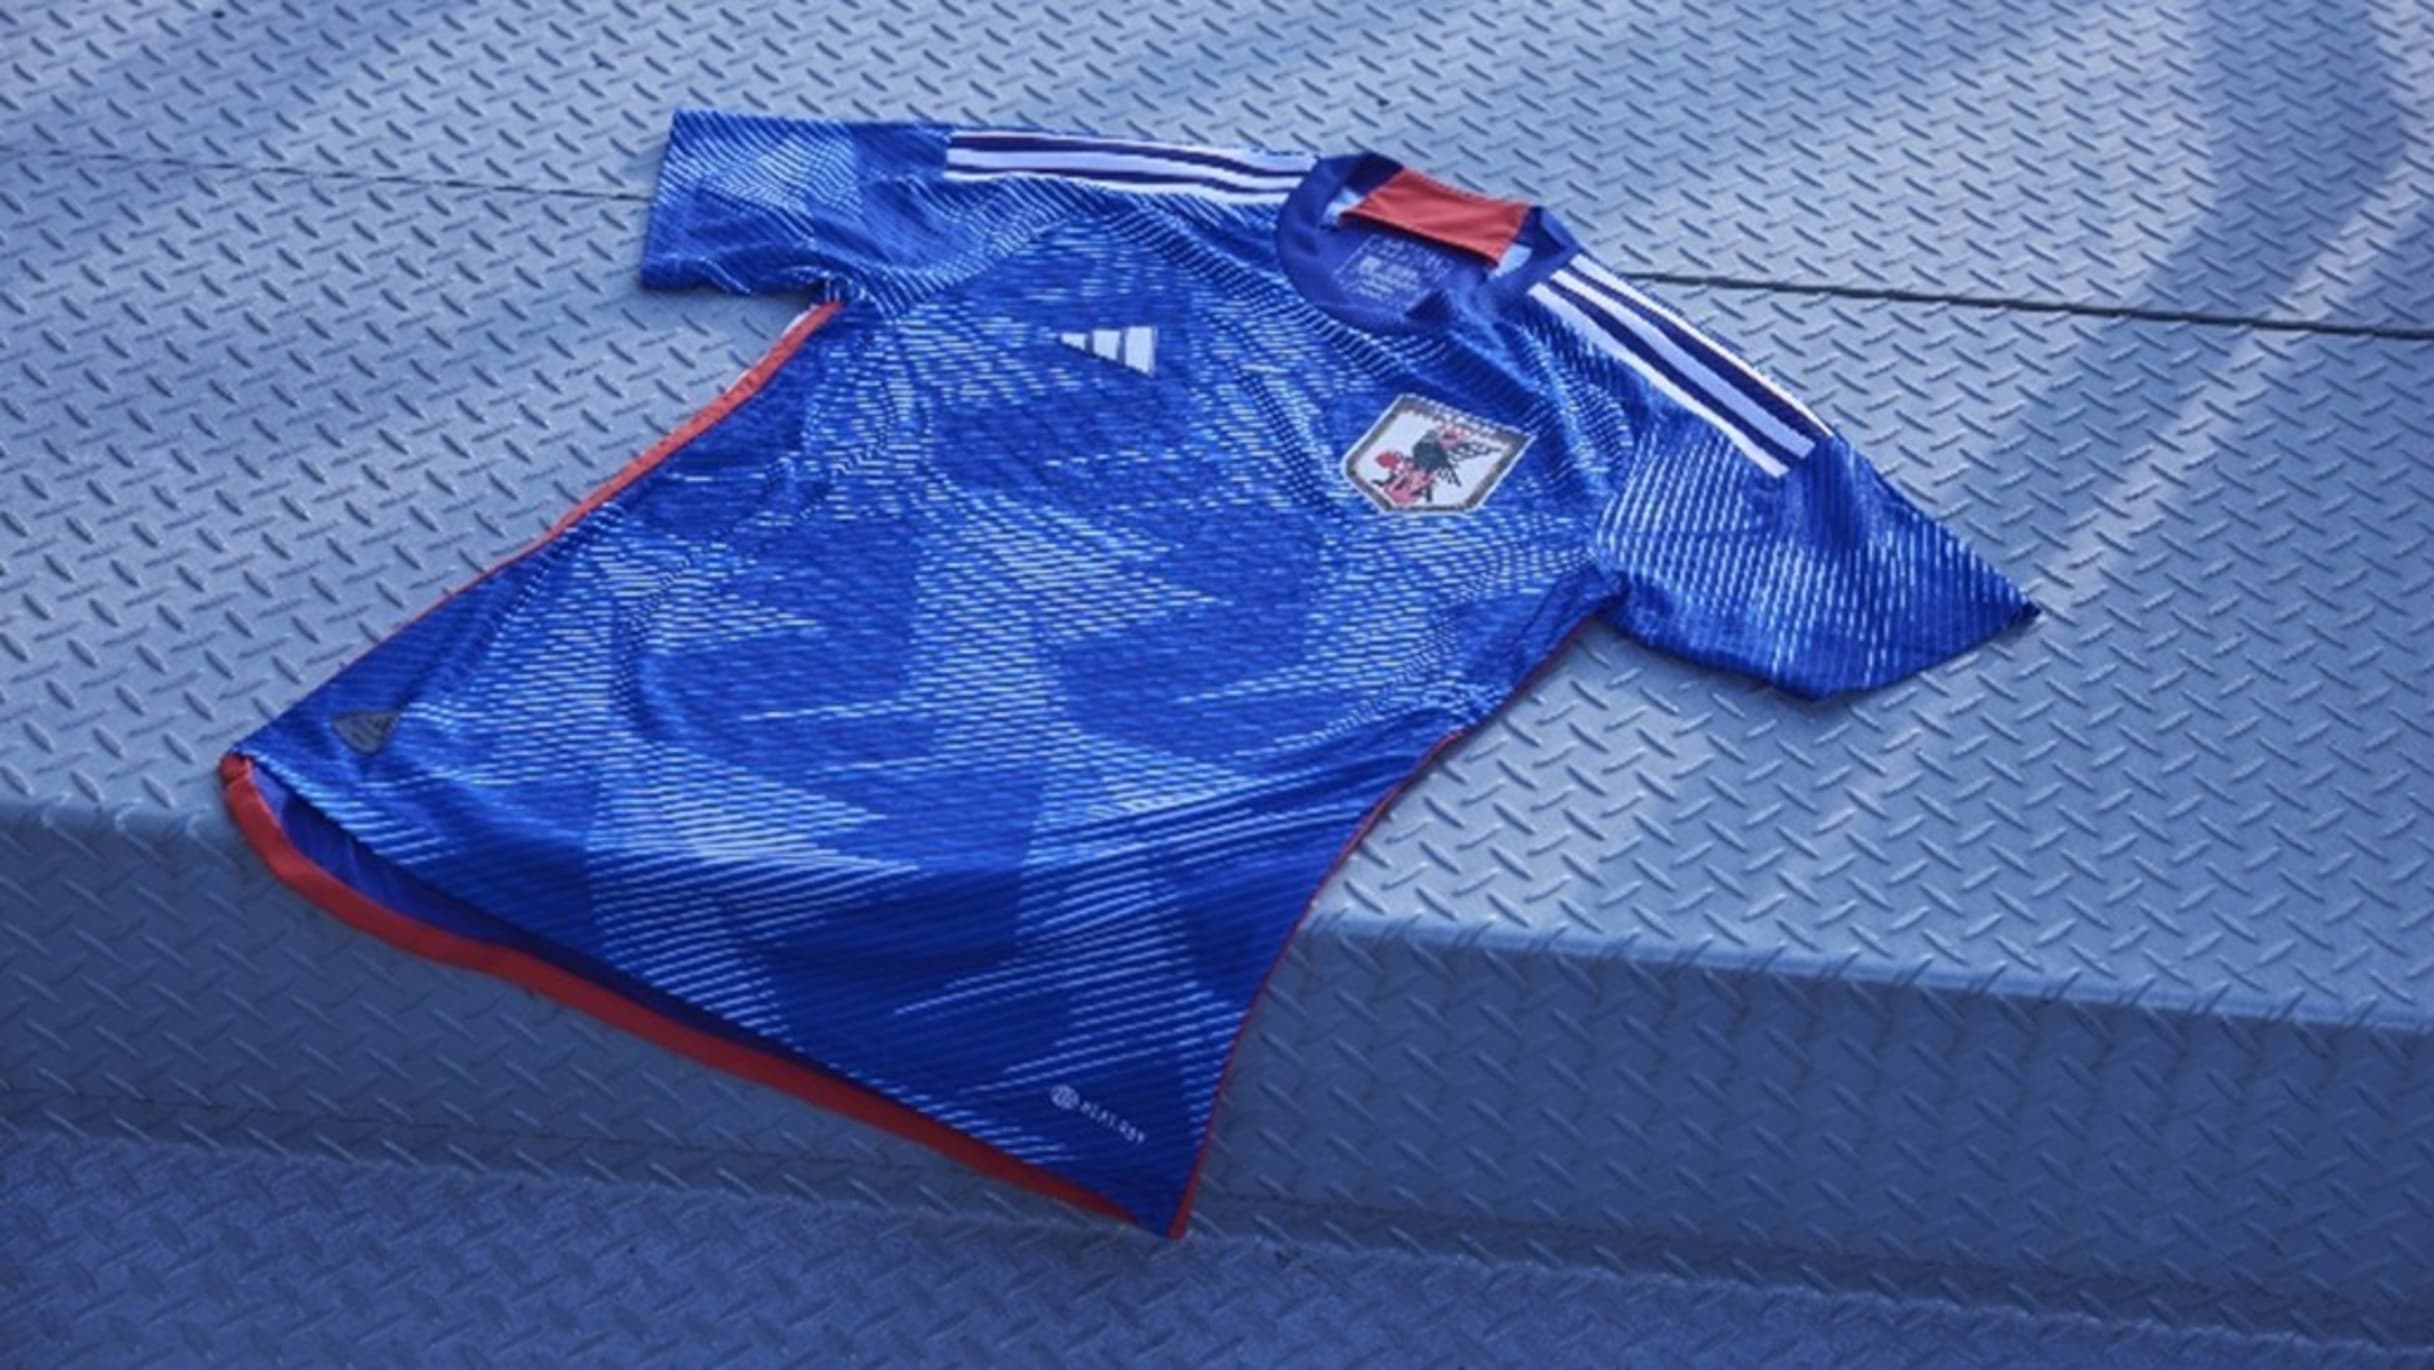 サッカー】カタールW杯などで着用する日本代表新ユニフォームが発表